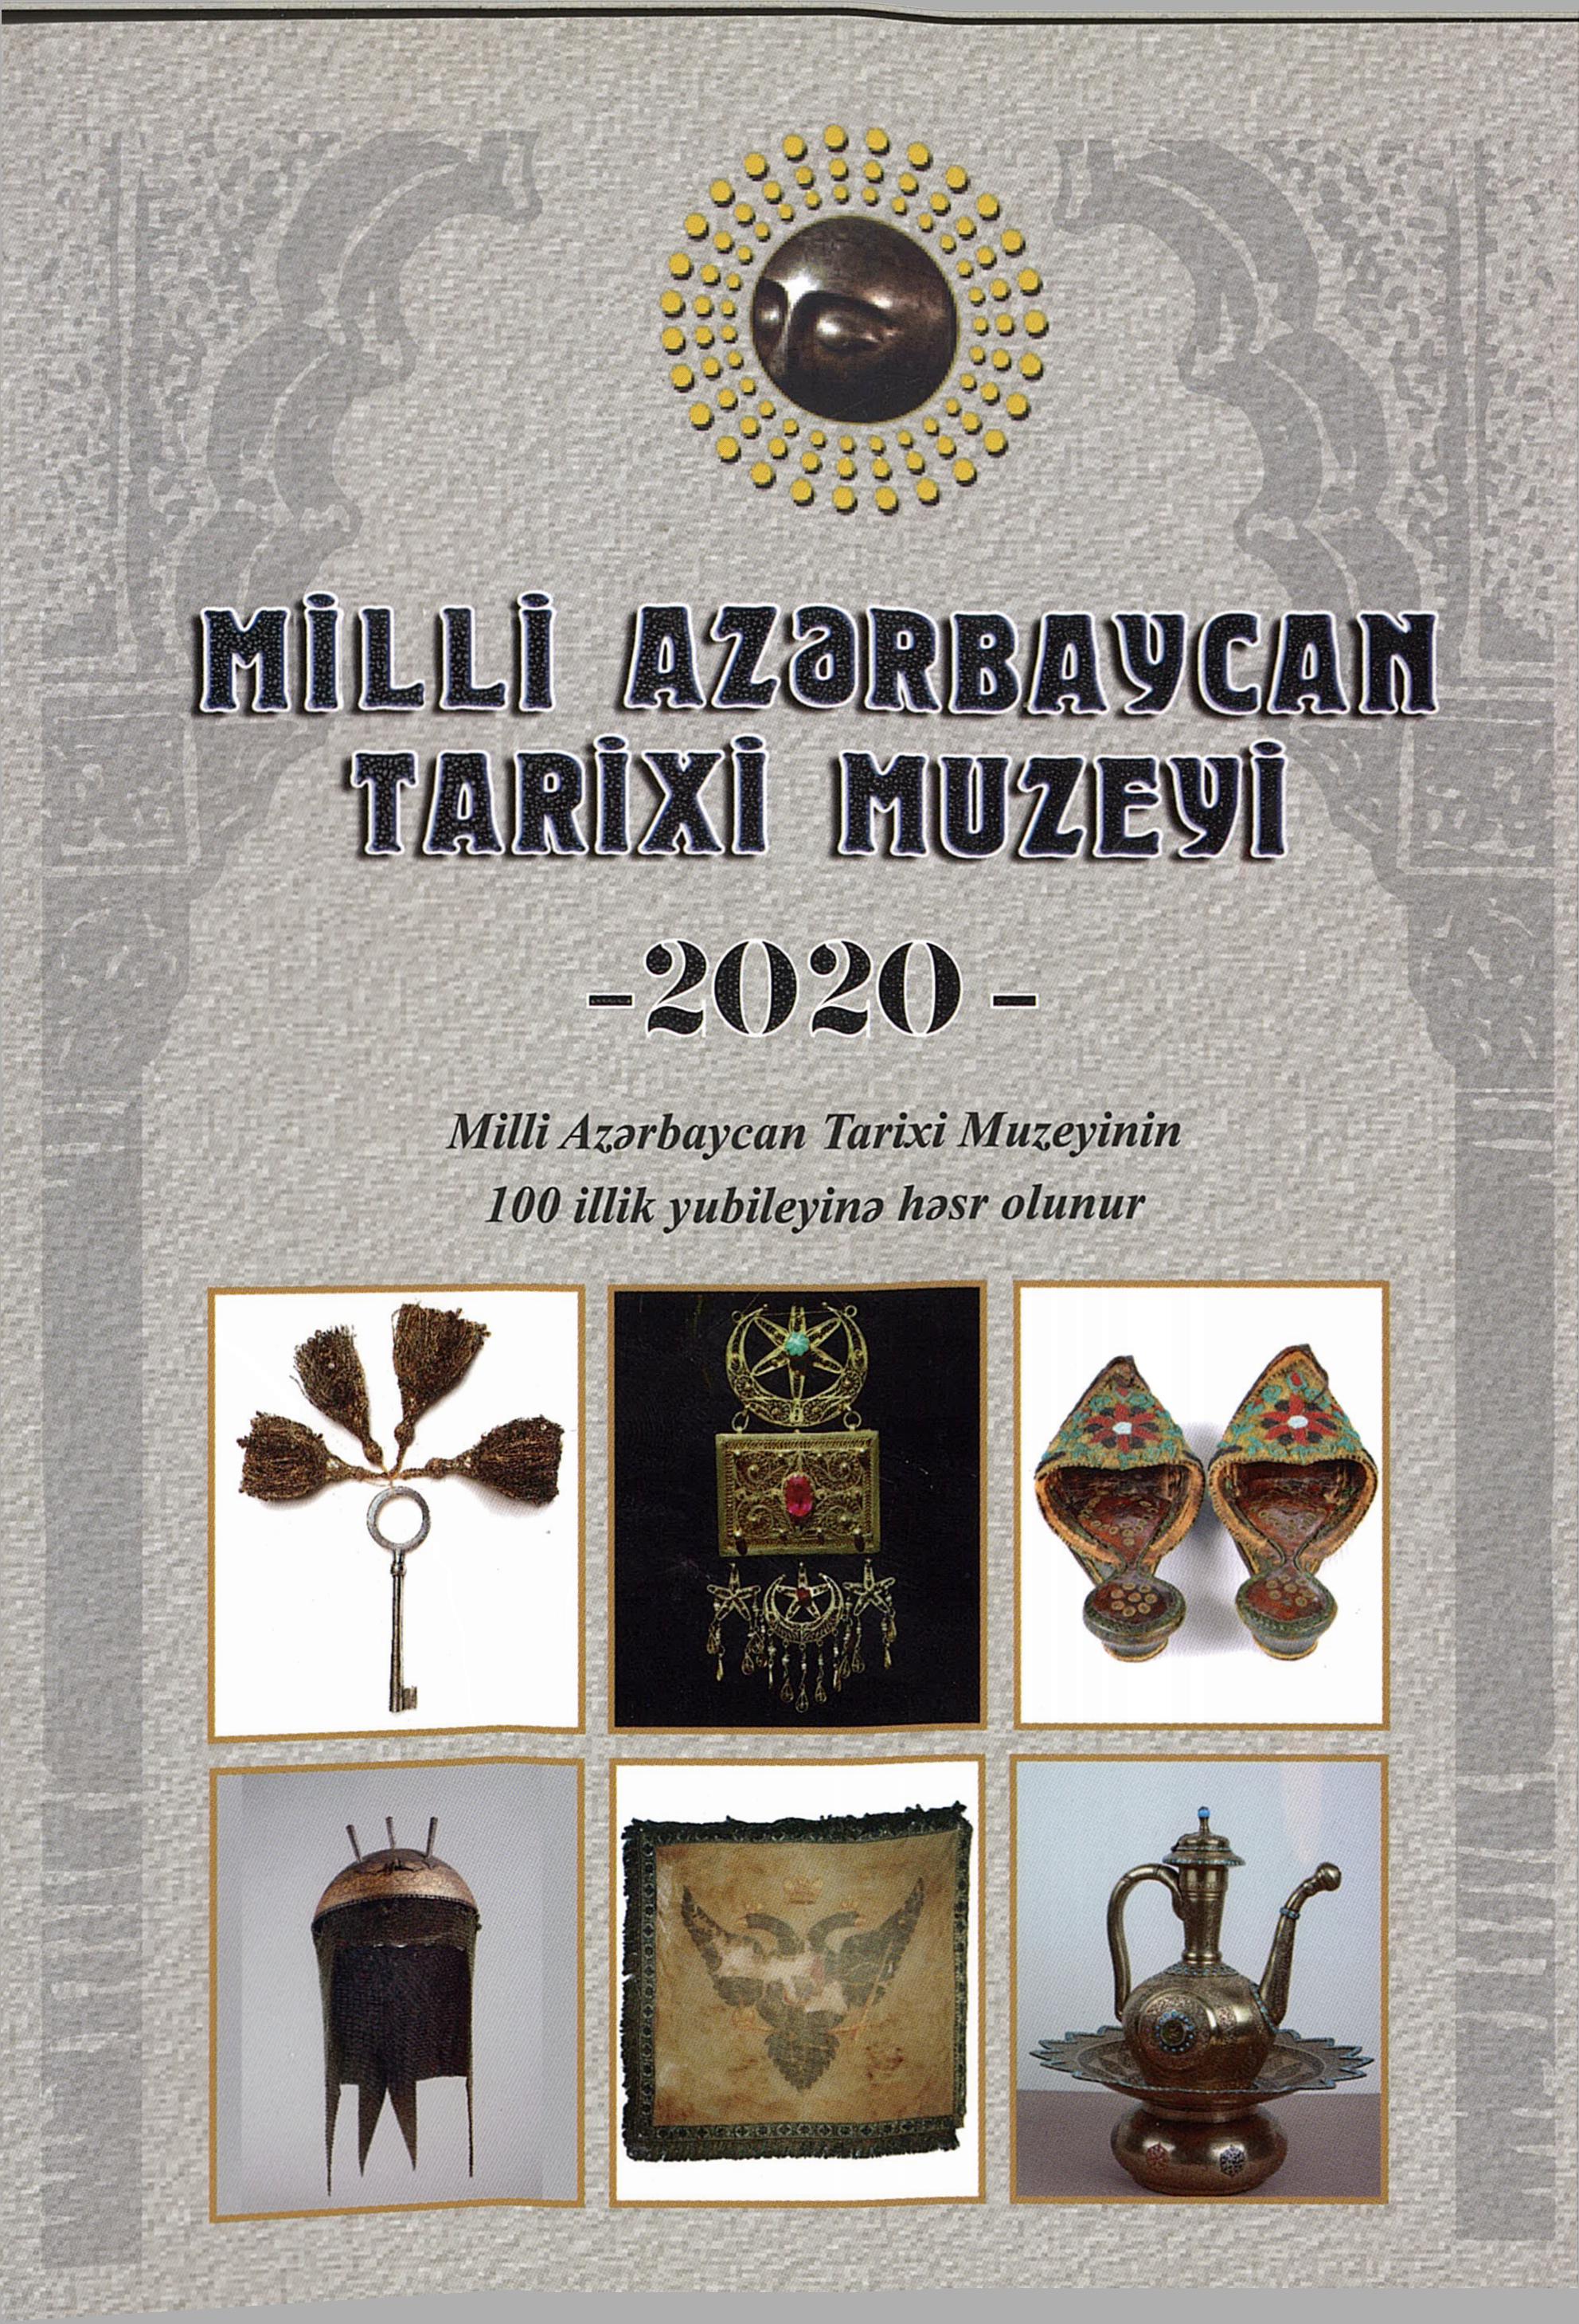  Milli Azərbaycan Tarixi Muzeyi 2020 (Milli Azərbaycan Tarixi Muzeyinin  100 illik yubileyinə həsr olunur)